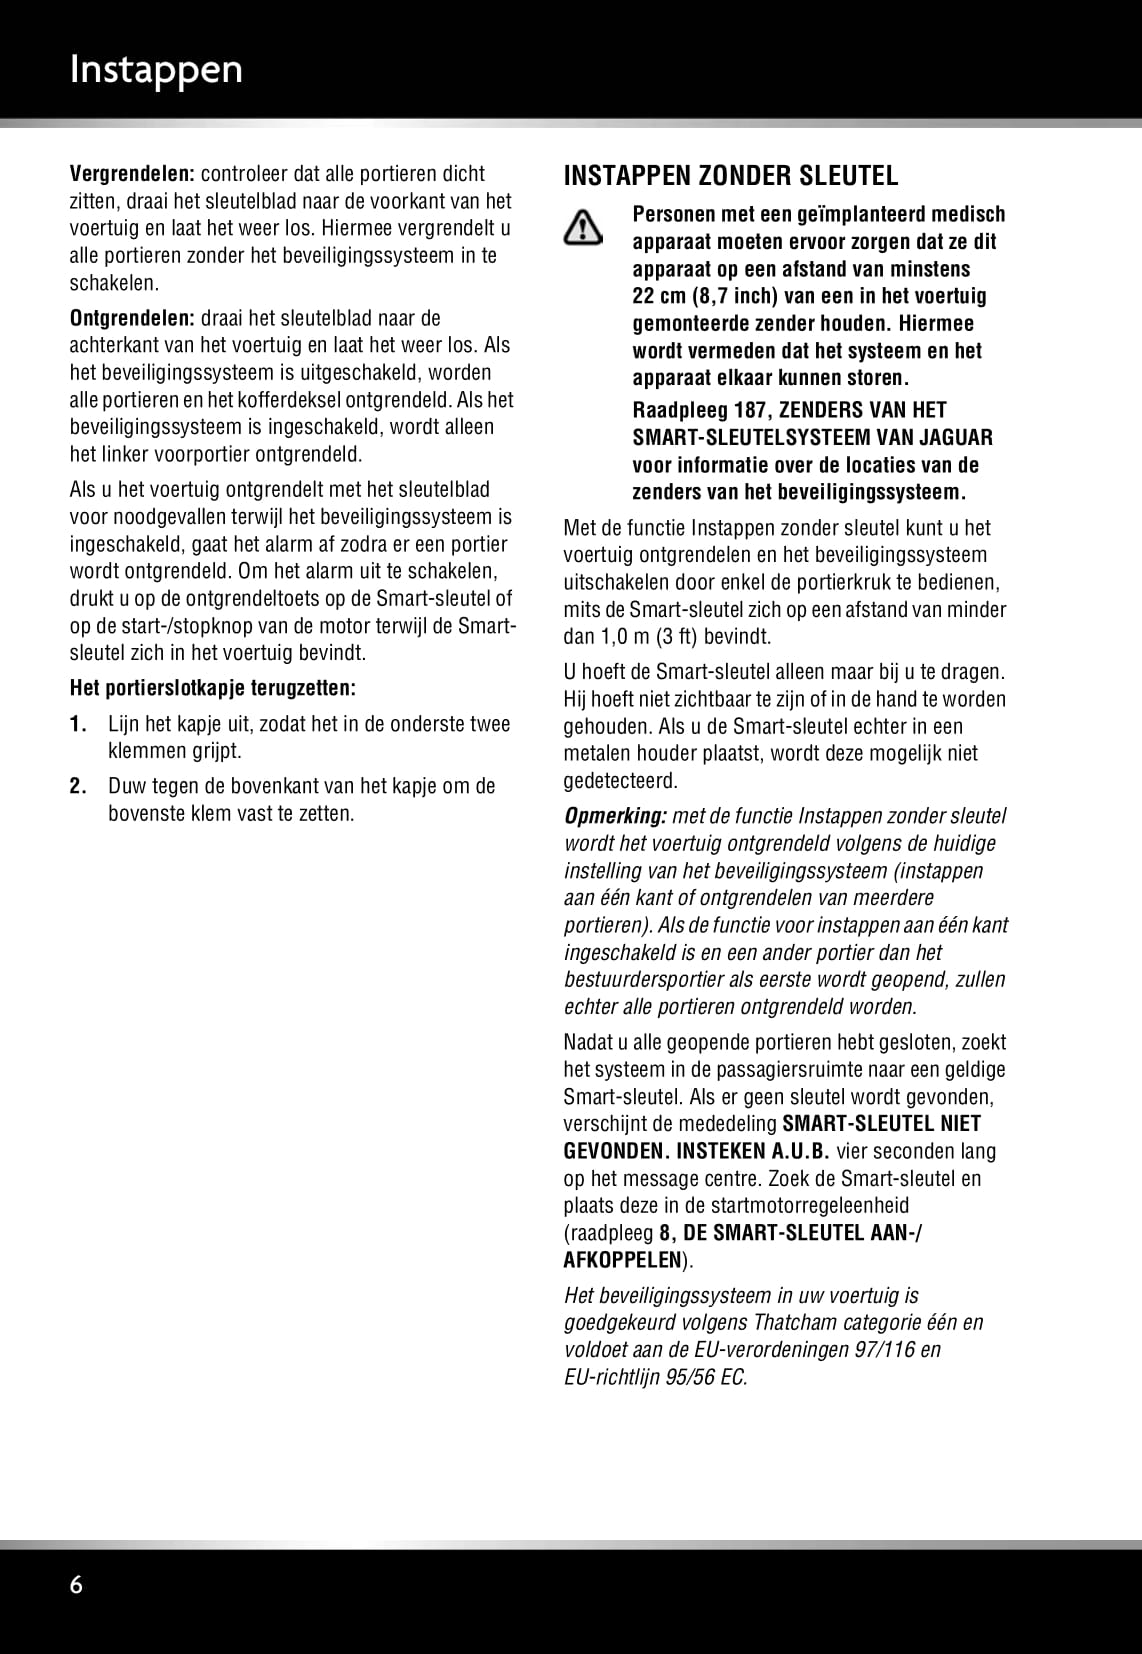 2008-2009 Jaguar XF Owner's Manual | Dutch